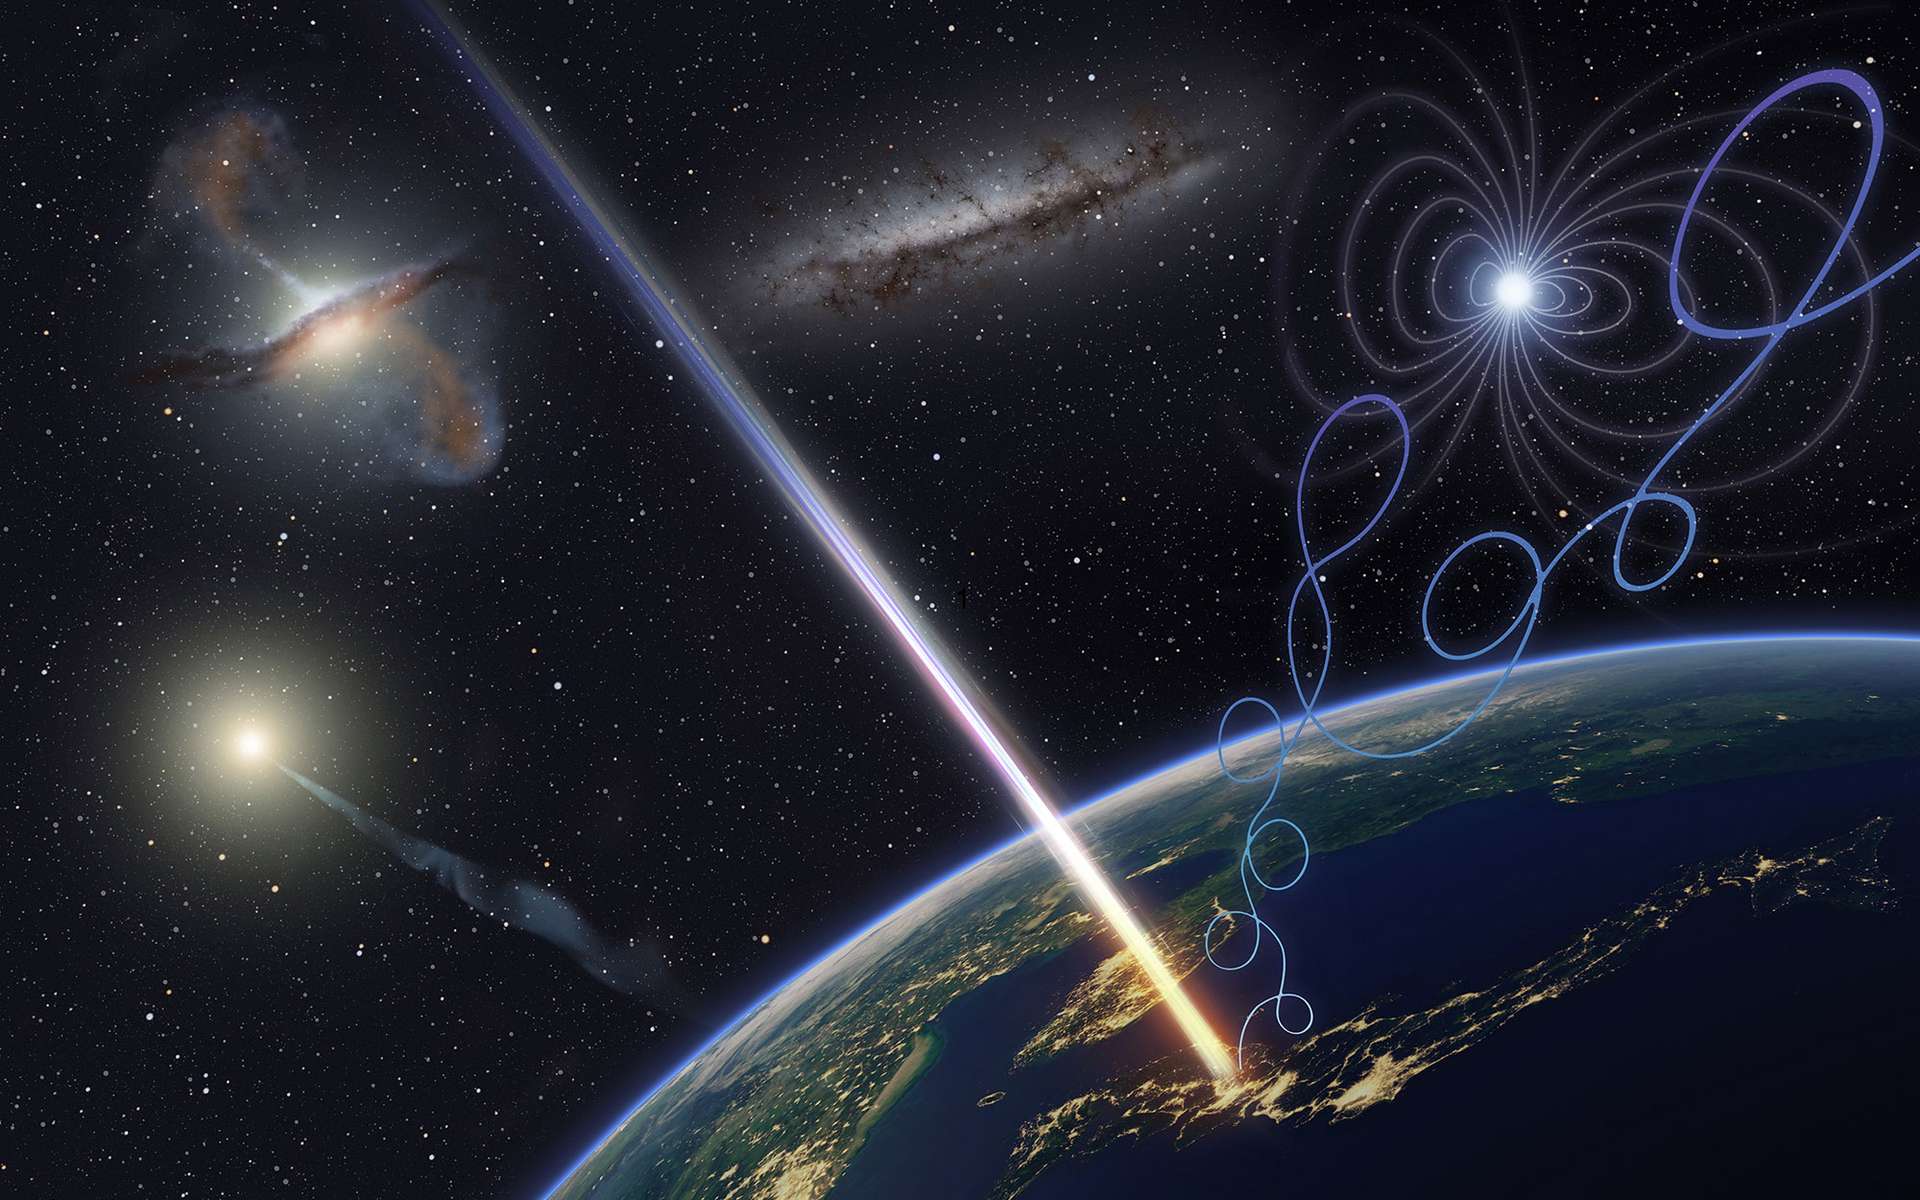 La Terre a été frappée par des particules cosmiques d'origine inconnue des dizaines de millions de fois plus énergétiques qu'au LHC